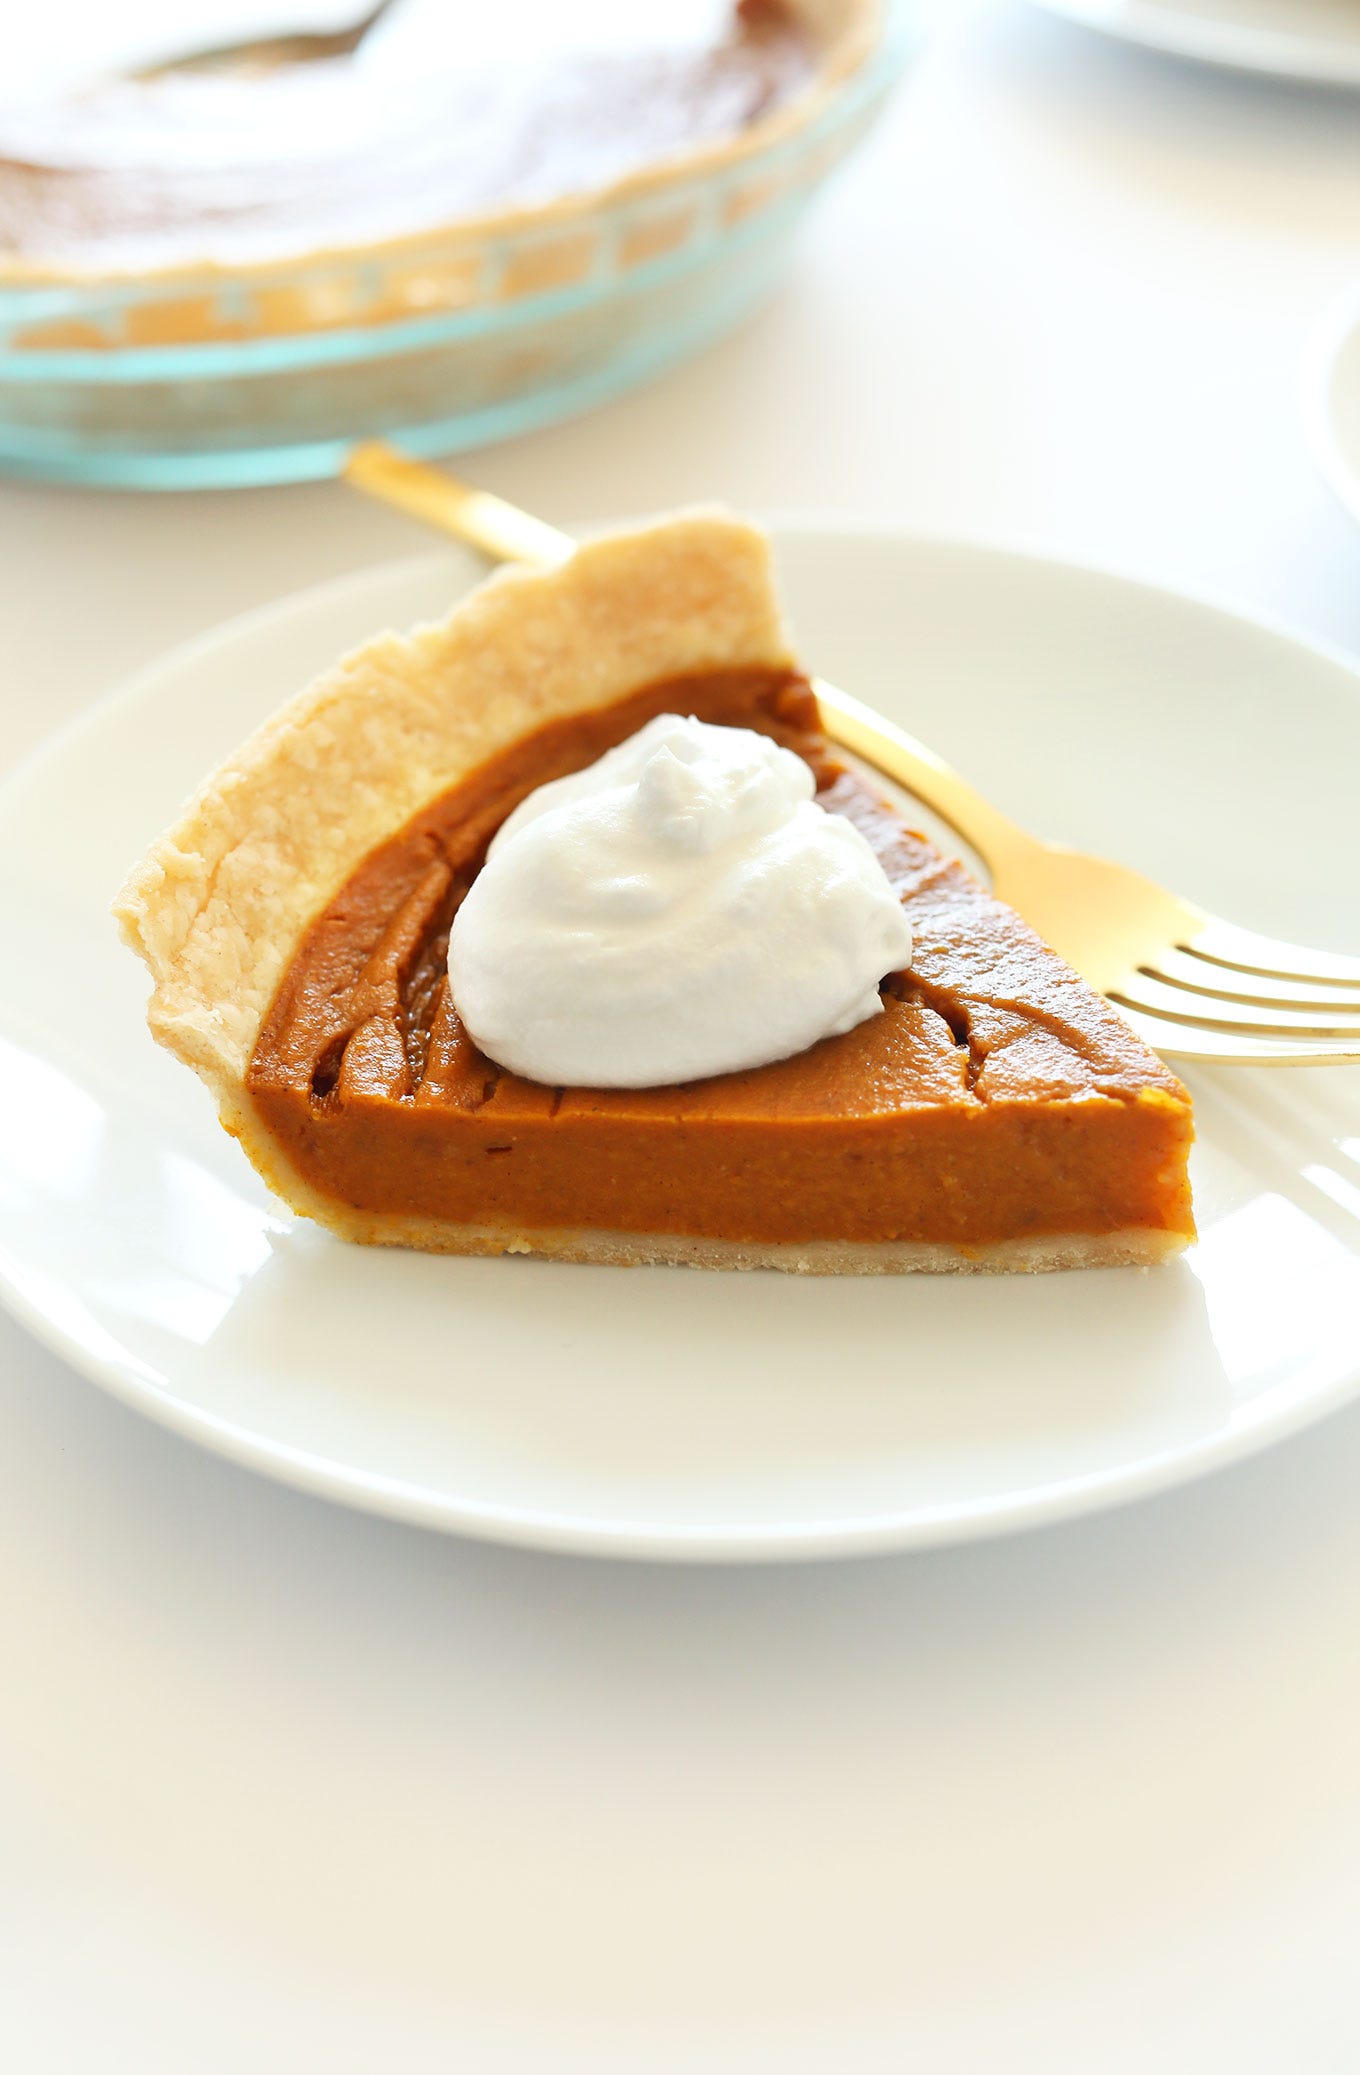 https://minimalistbaker.com/wp-content/uploads/2014/11/THE-BEST-Vegan-Gluten-Free-Pumpkin-Pie-10-ingredients-simple-methods-SO-delicious.jpg